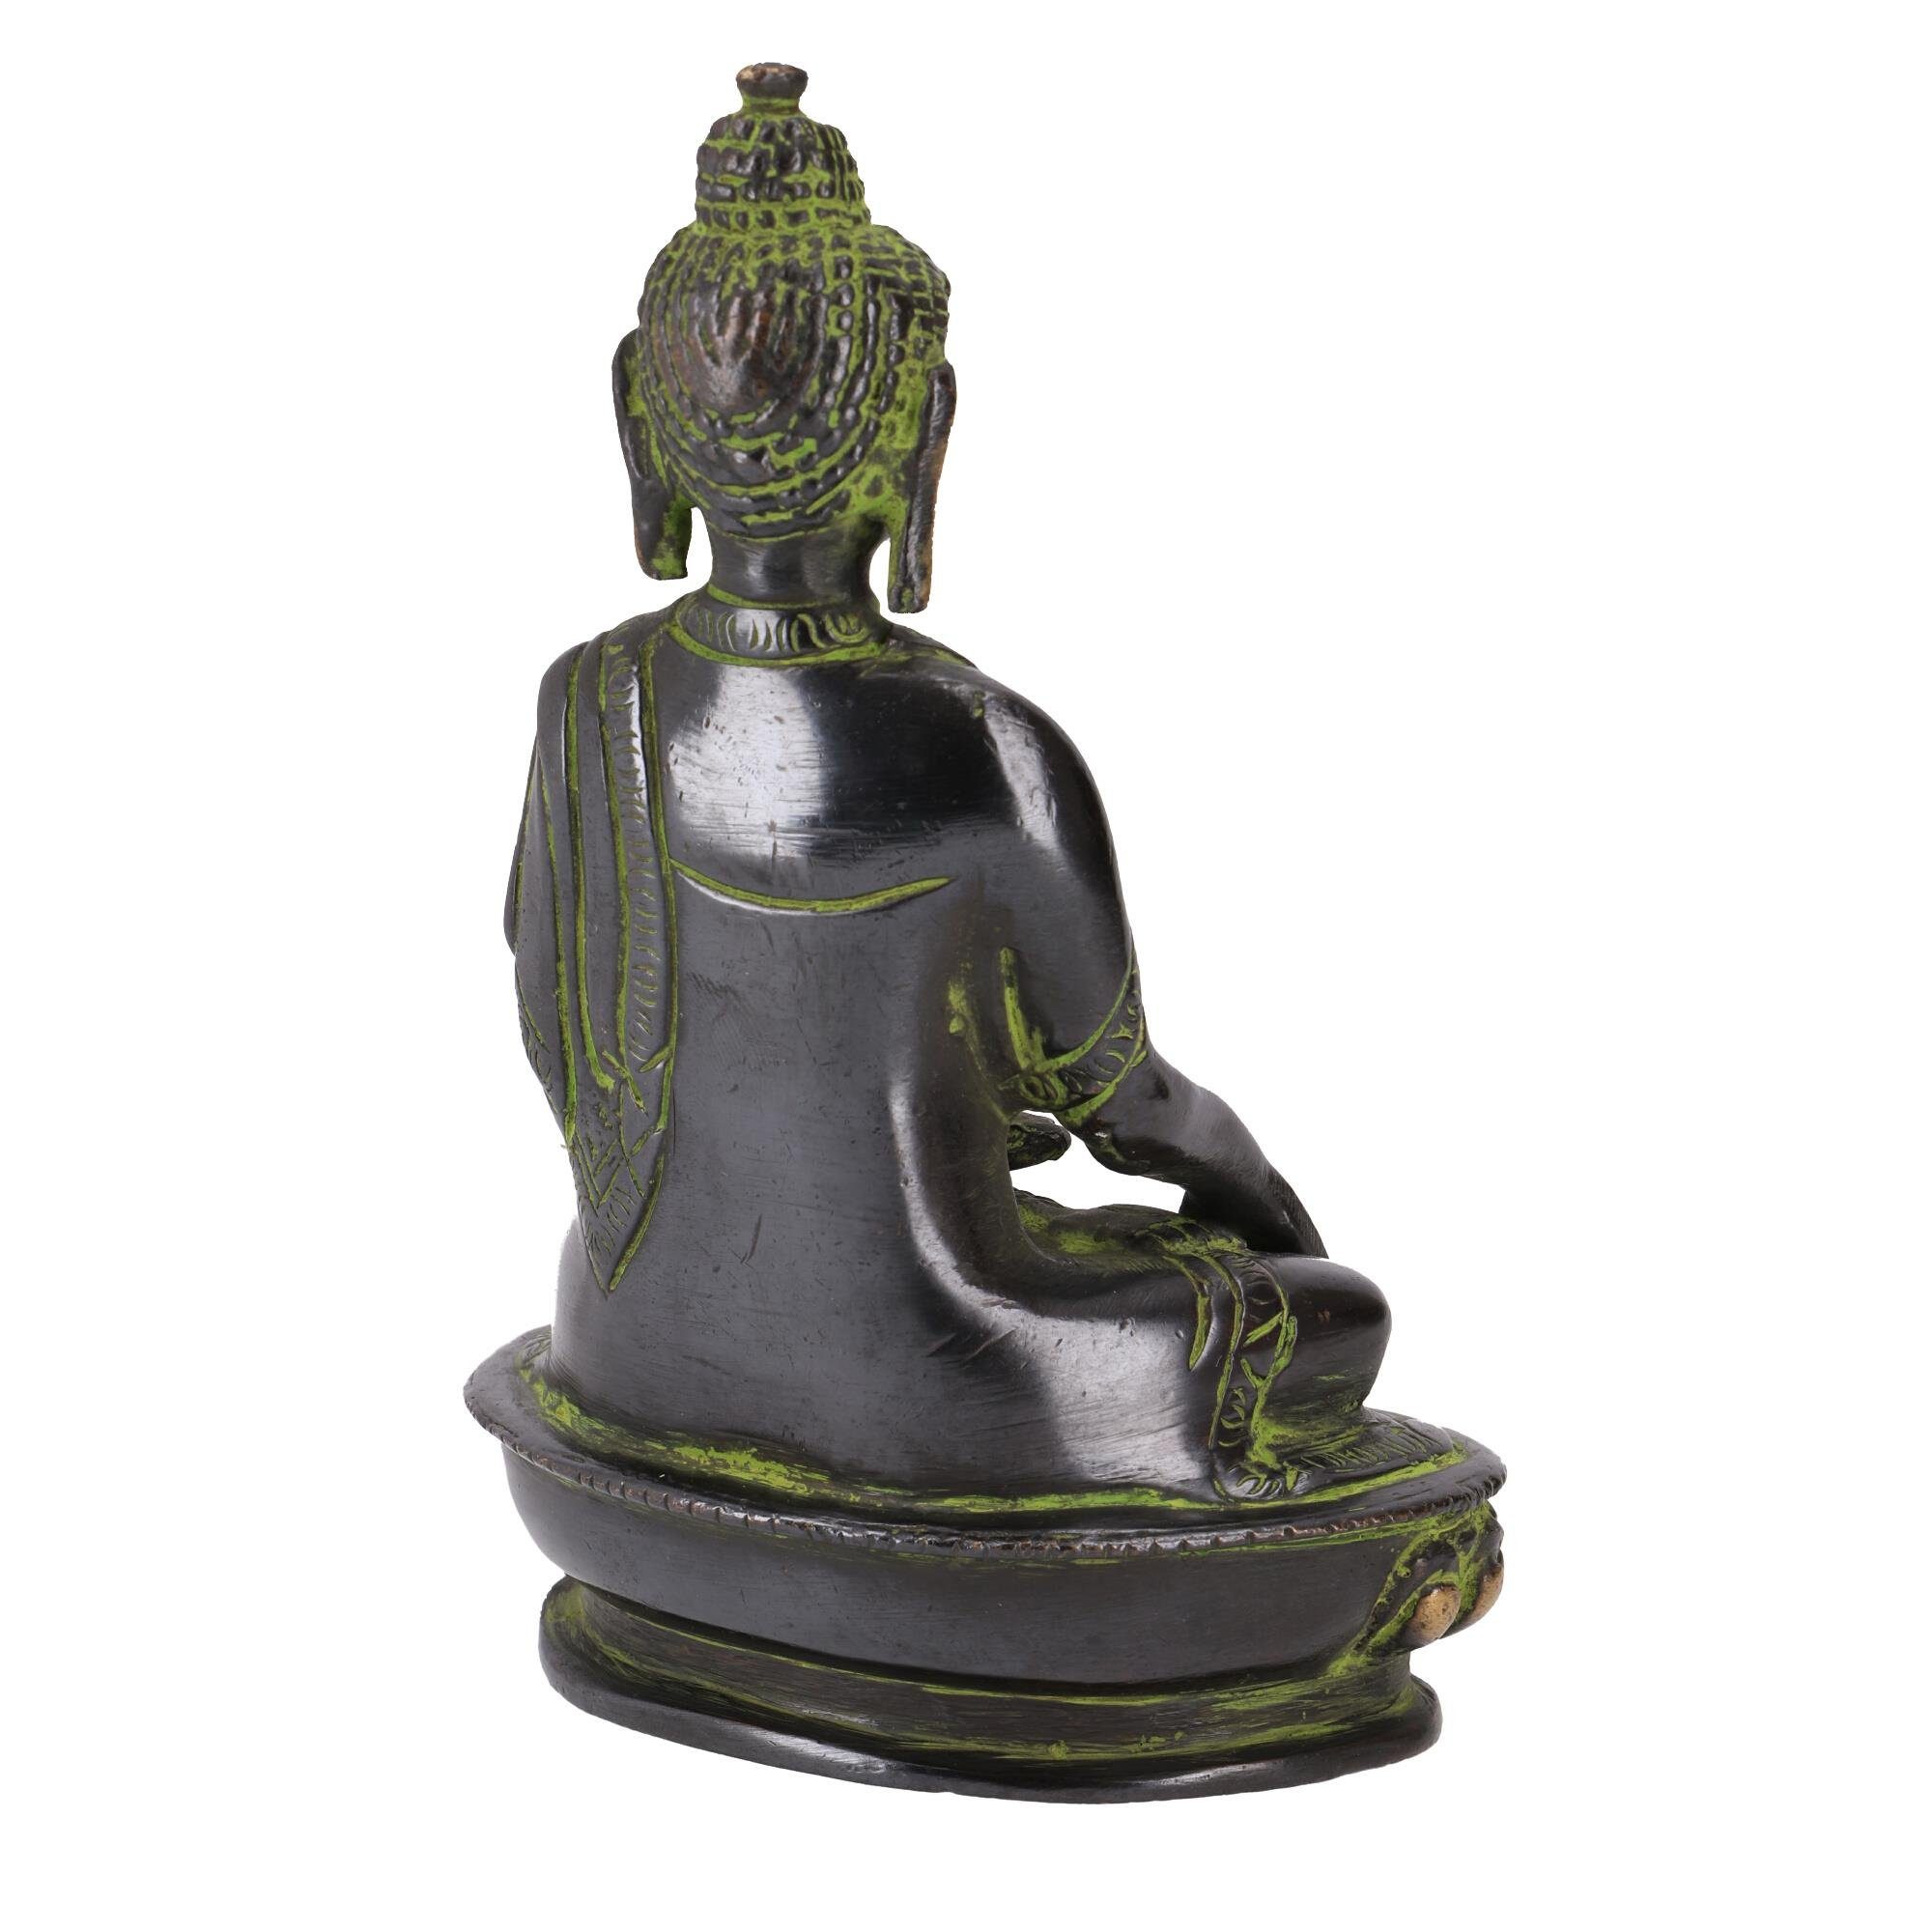 Buddha Bhumisparsa Guru-Shop 14.. aus Statue Mudra Buddhafigur Messing